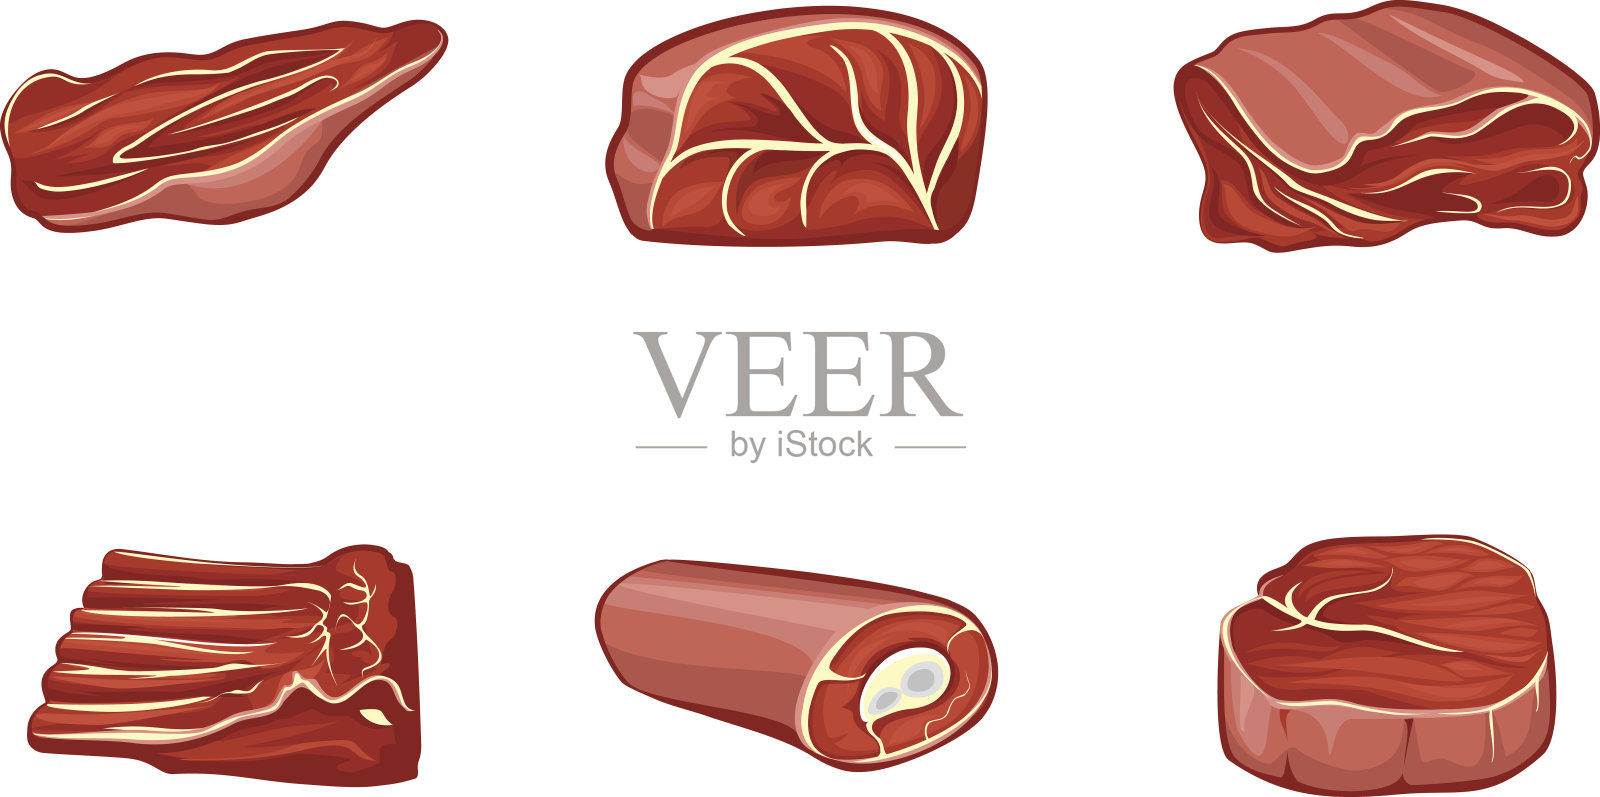 不同部位的红肉插画图片素材